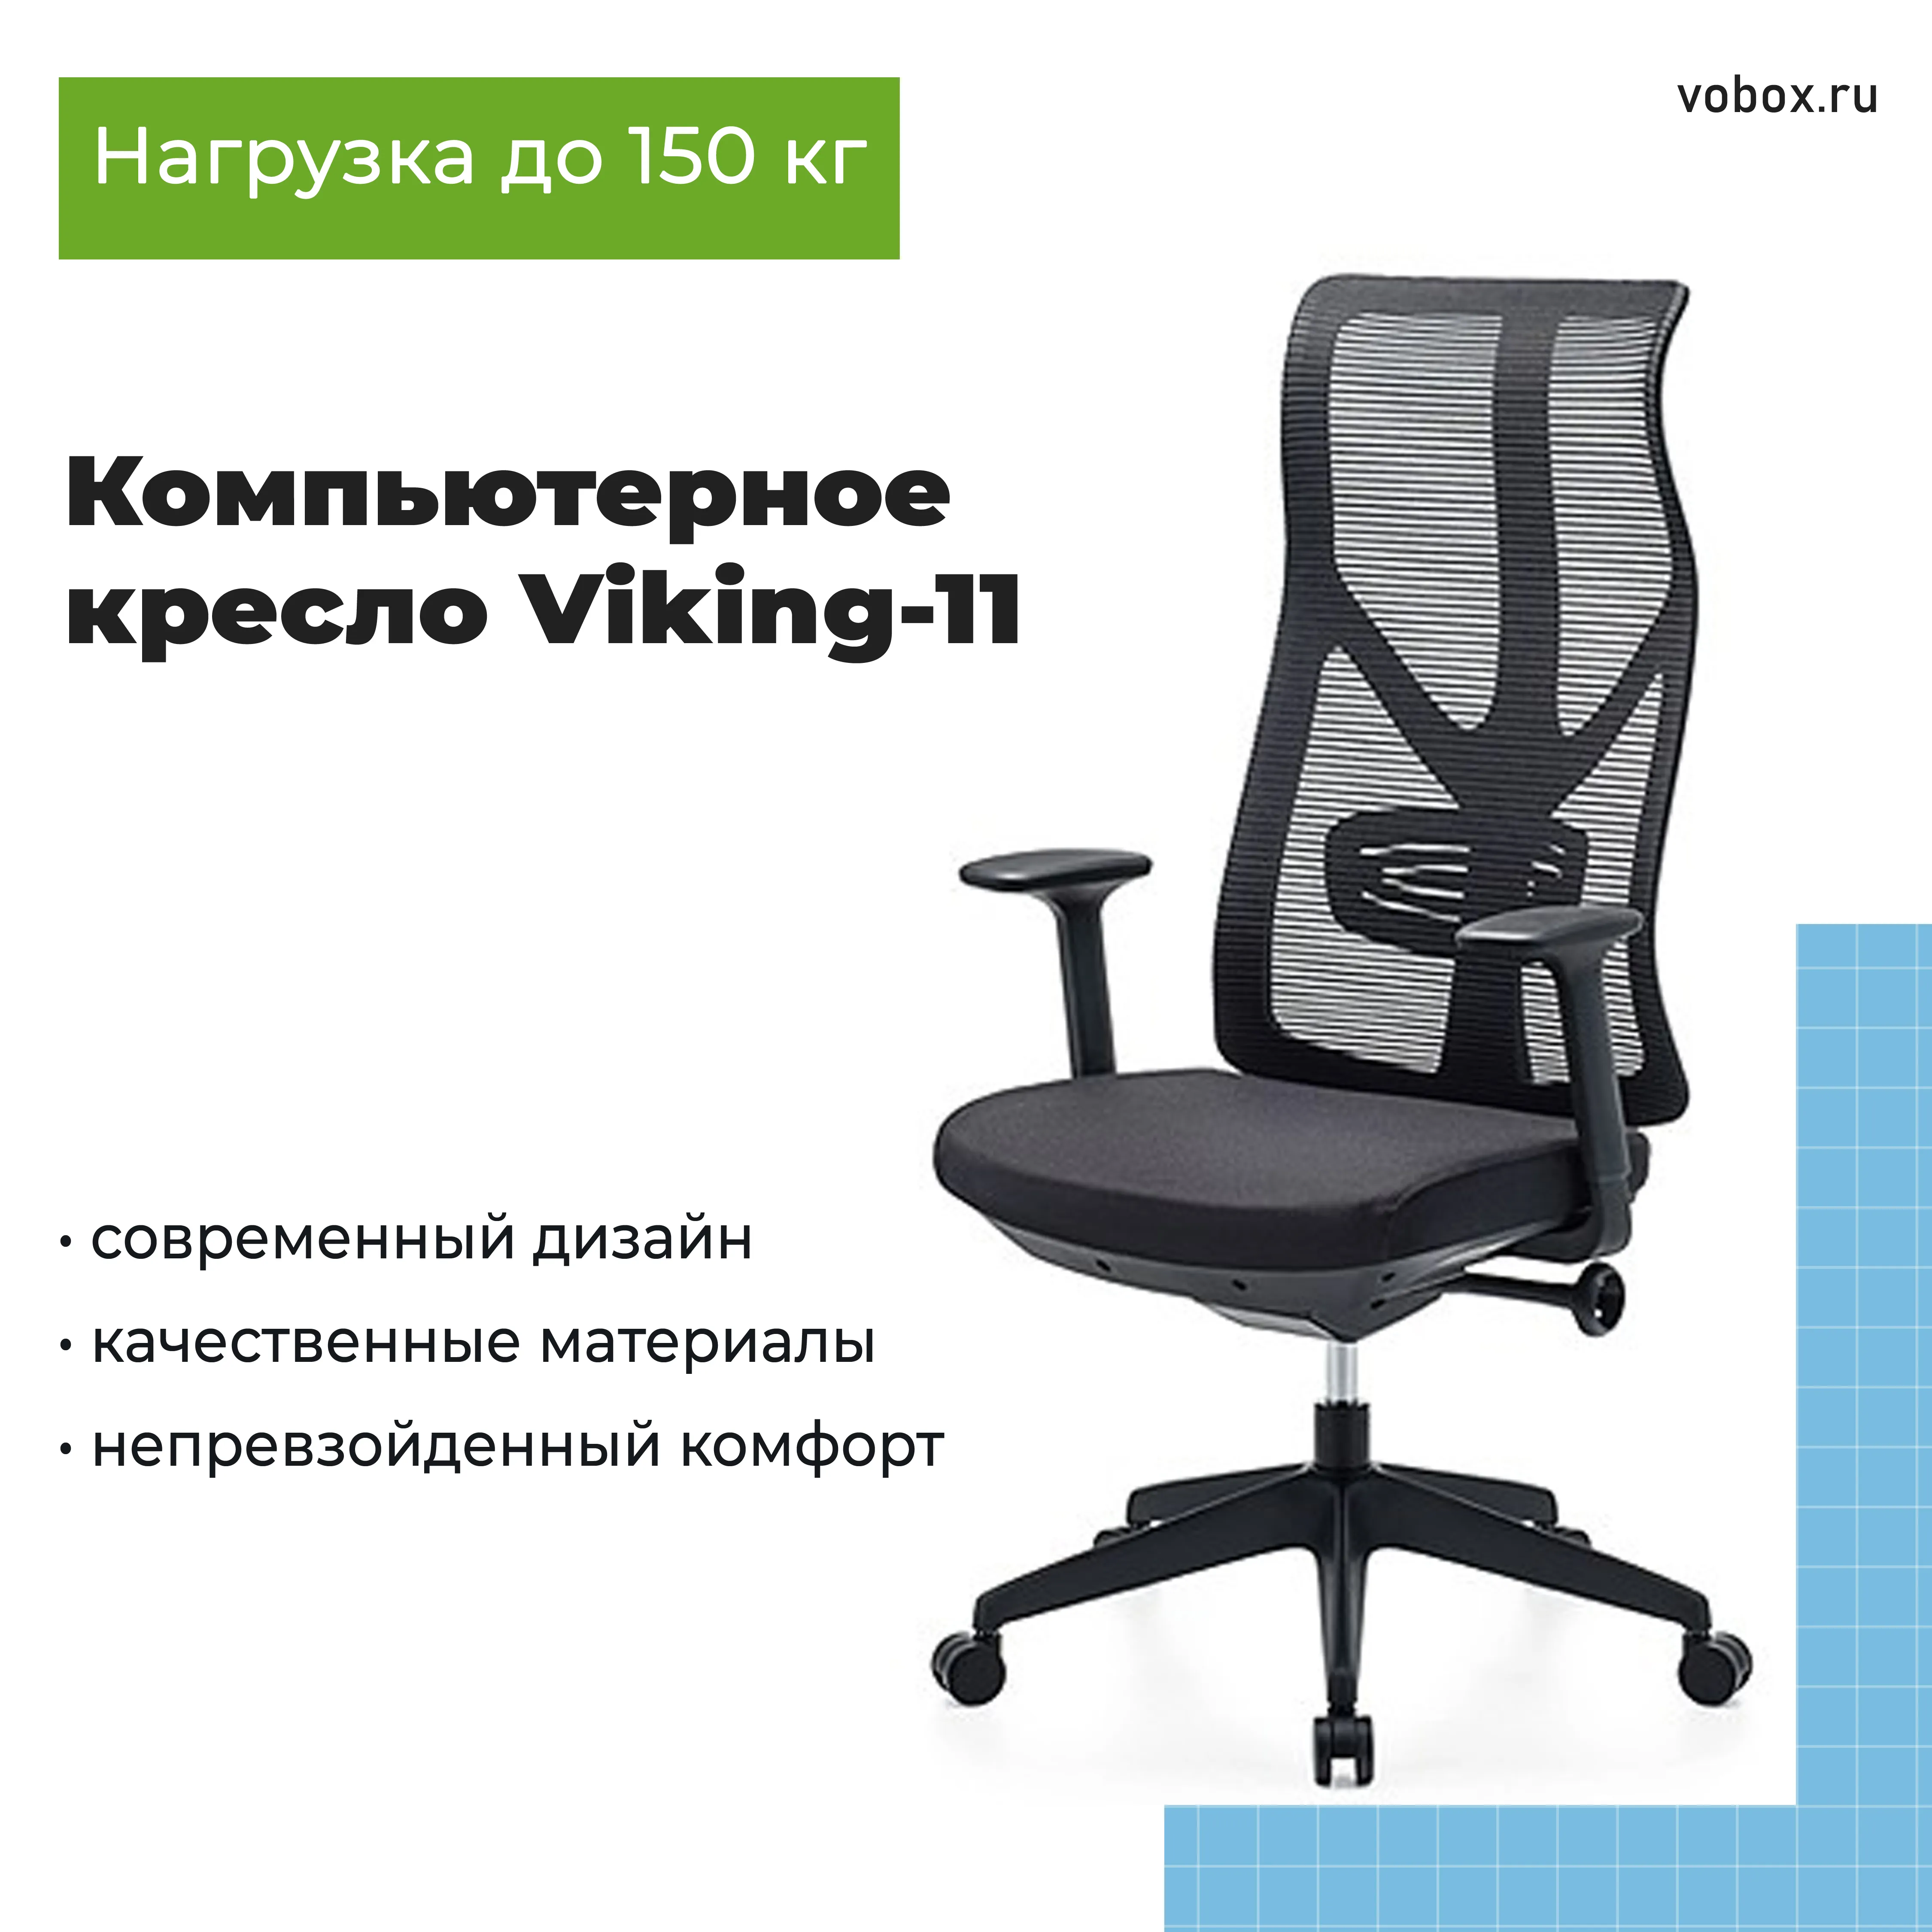 Компьютерное кресло Viking-11